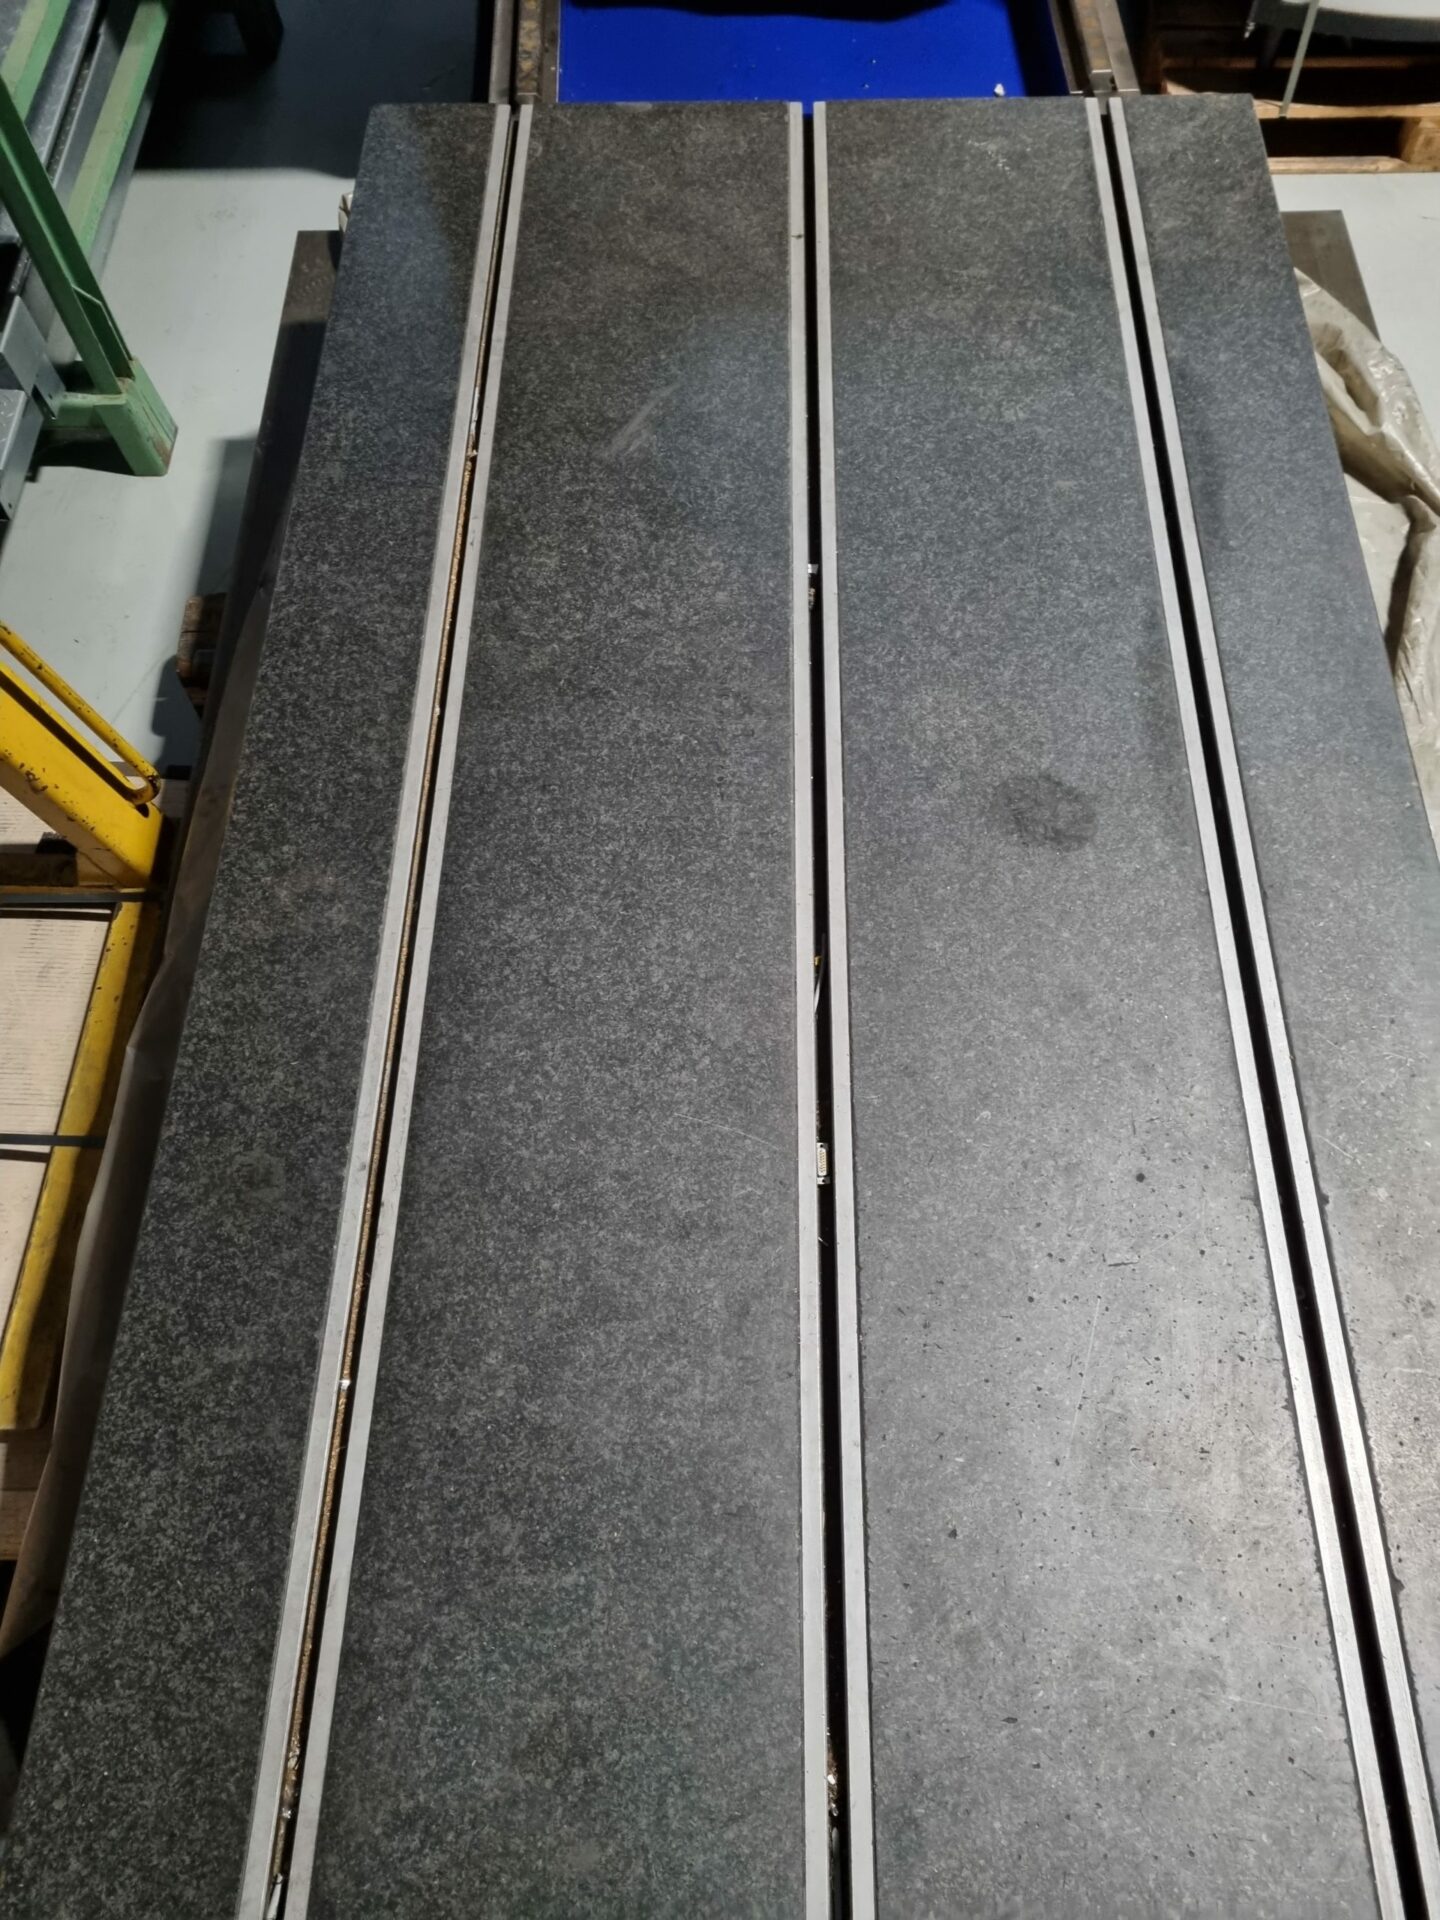 Messplatte – Kontrollplatte – Granitplatten aus Hartgestein 2840mm x 1200mm x 320mm (gebraucht)